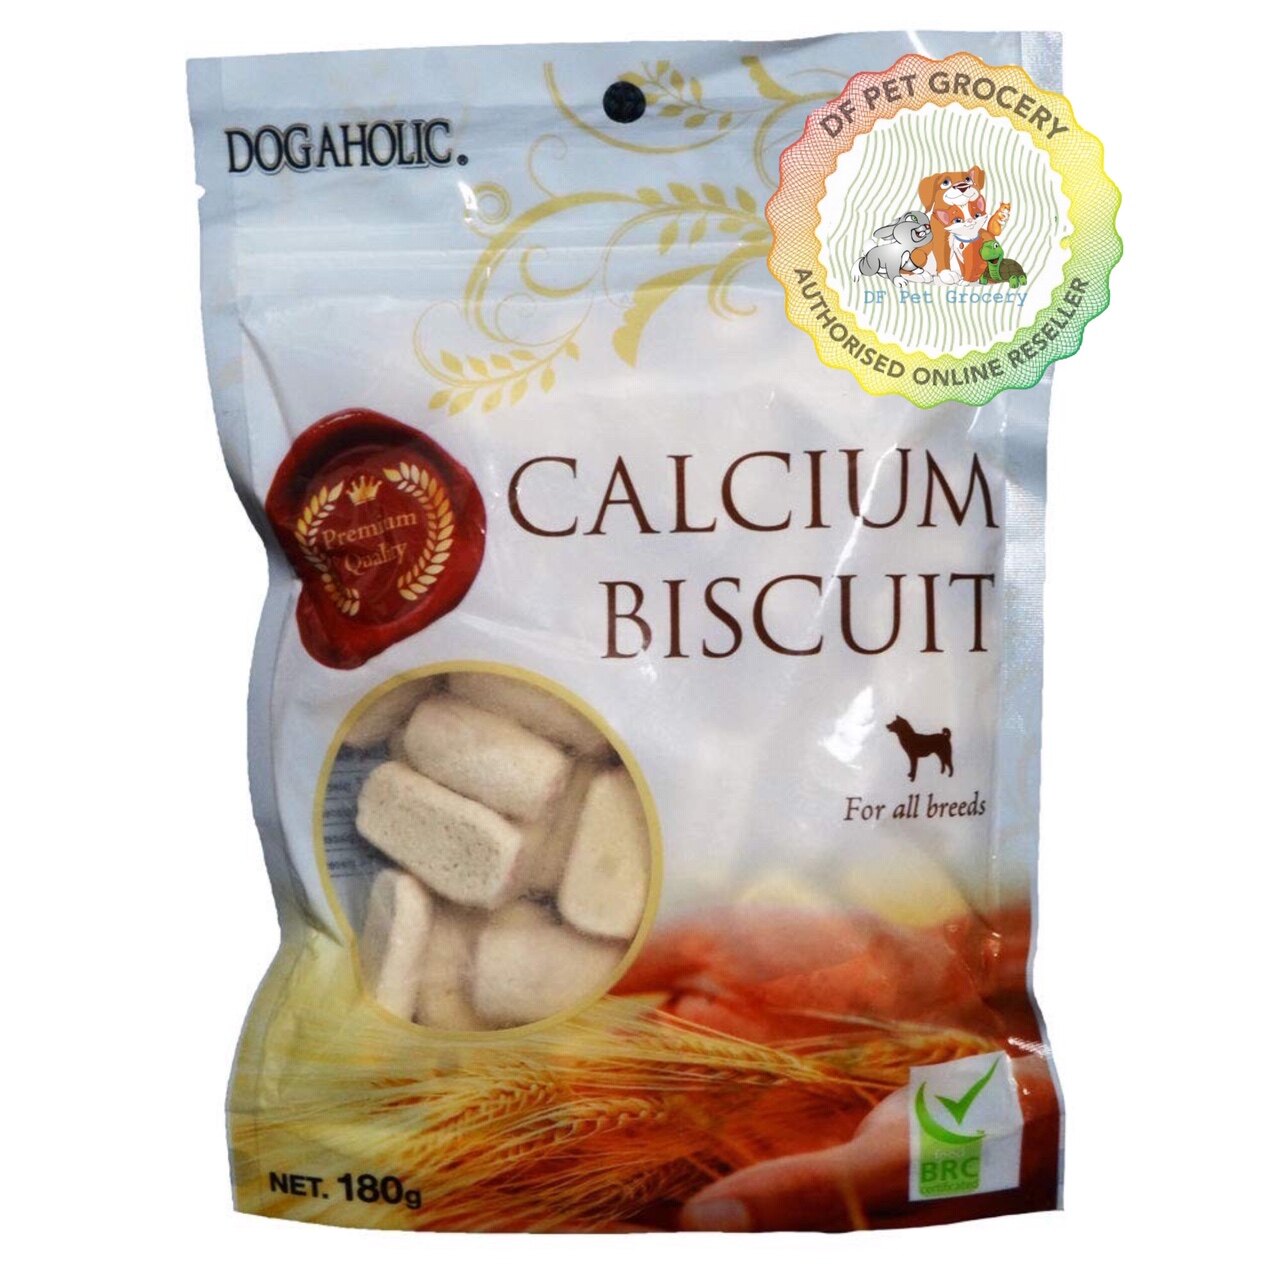 DOGAHOLIC Calcium Biscuit 180g - Dog Biscuit